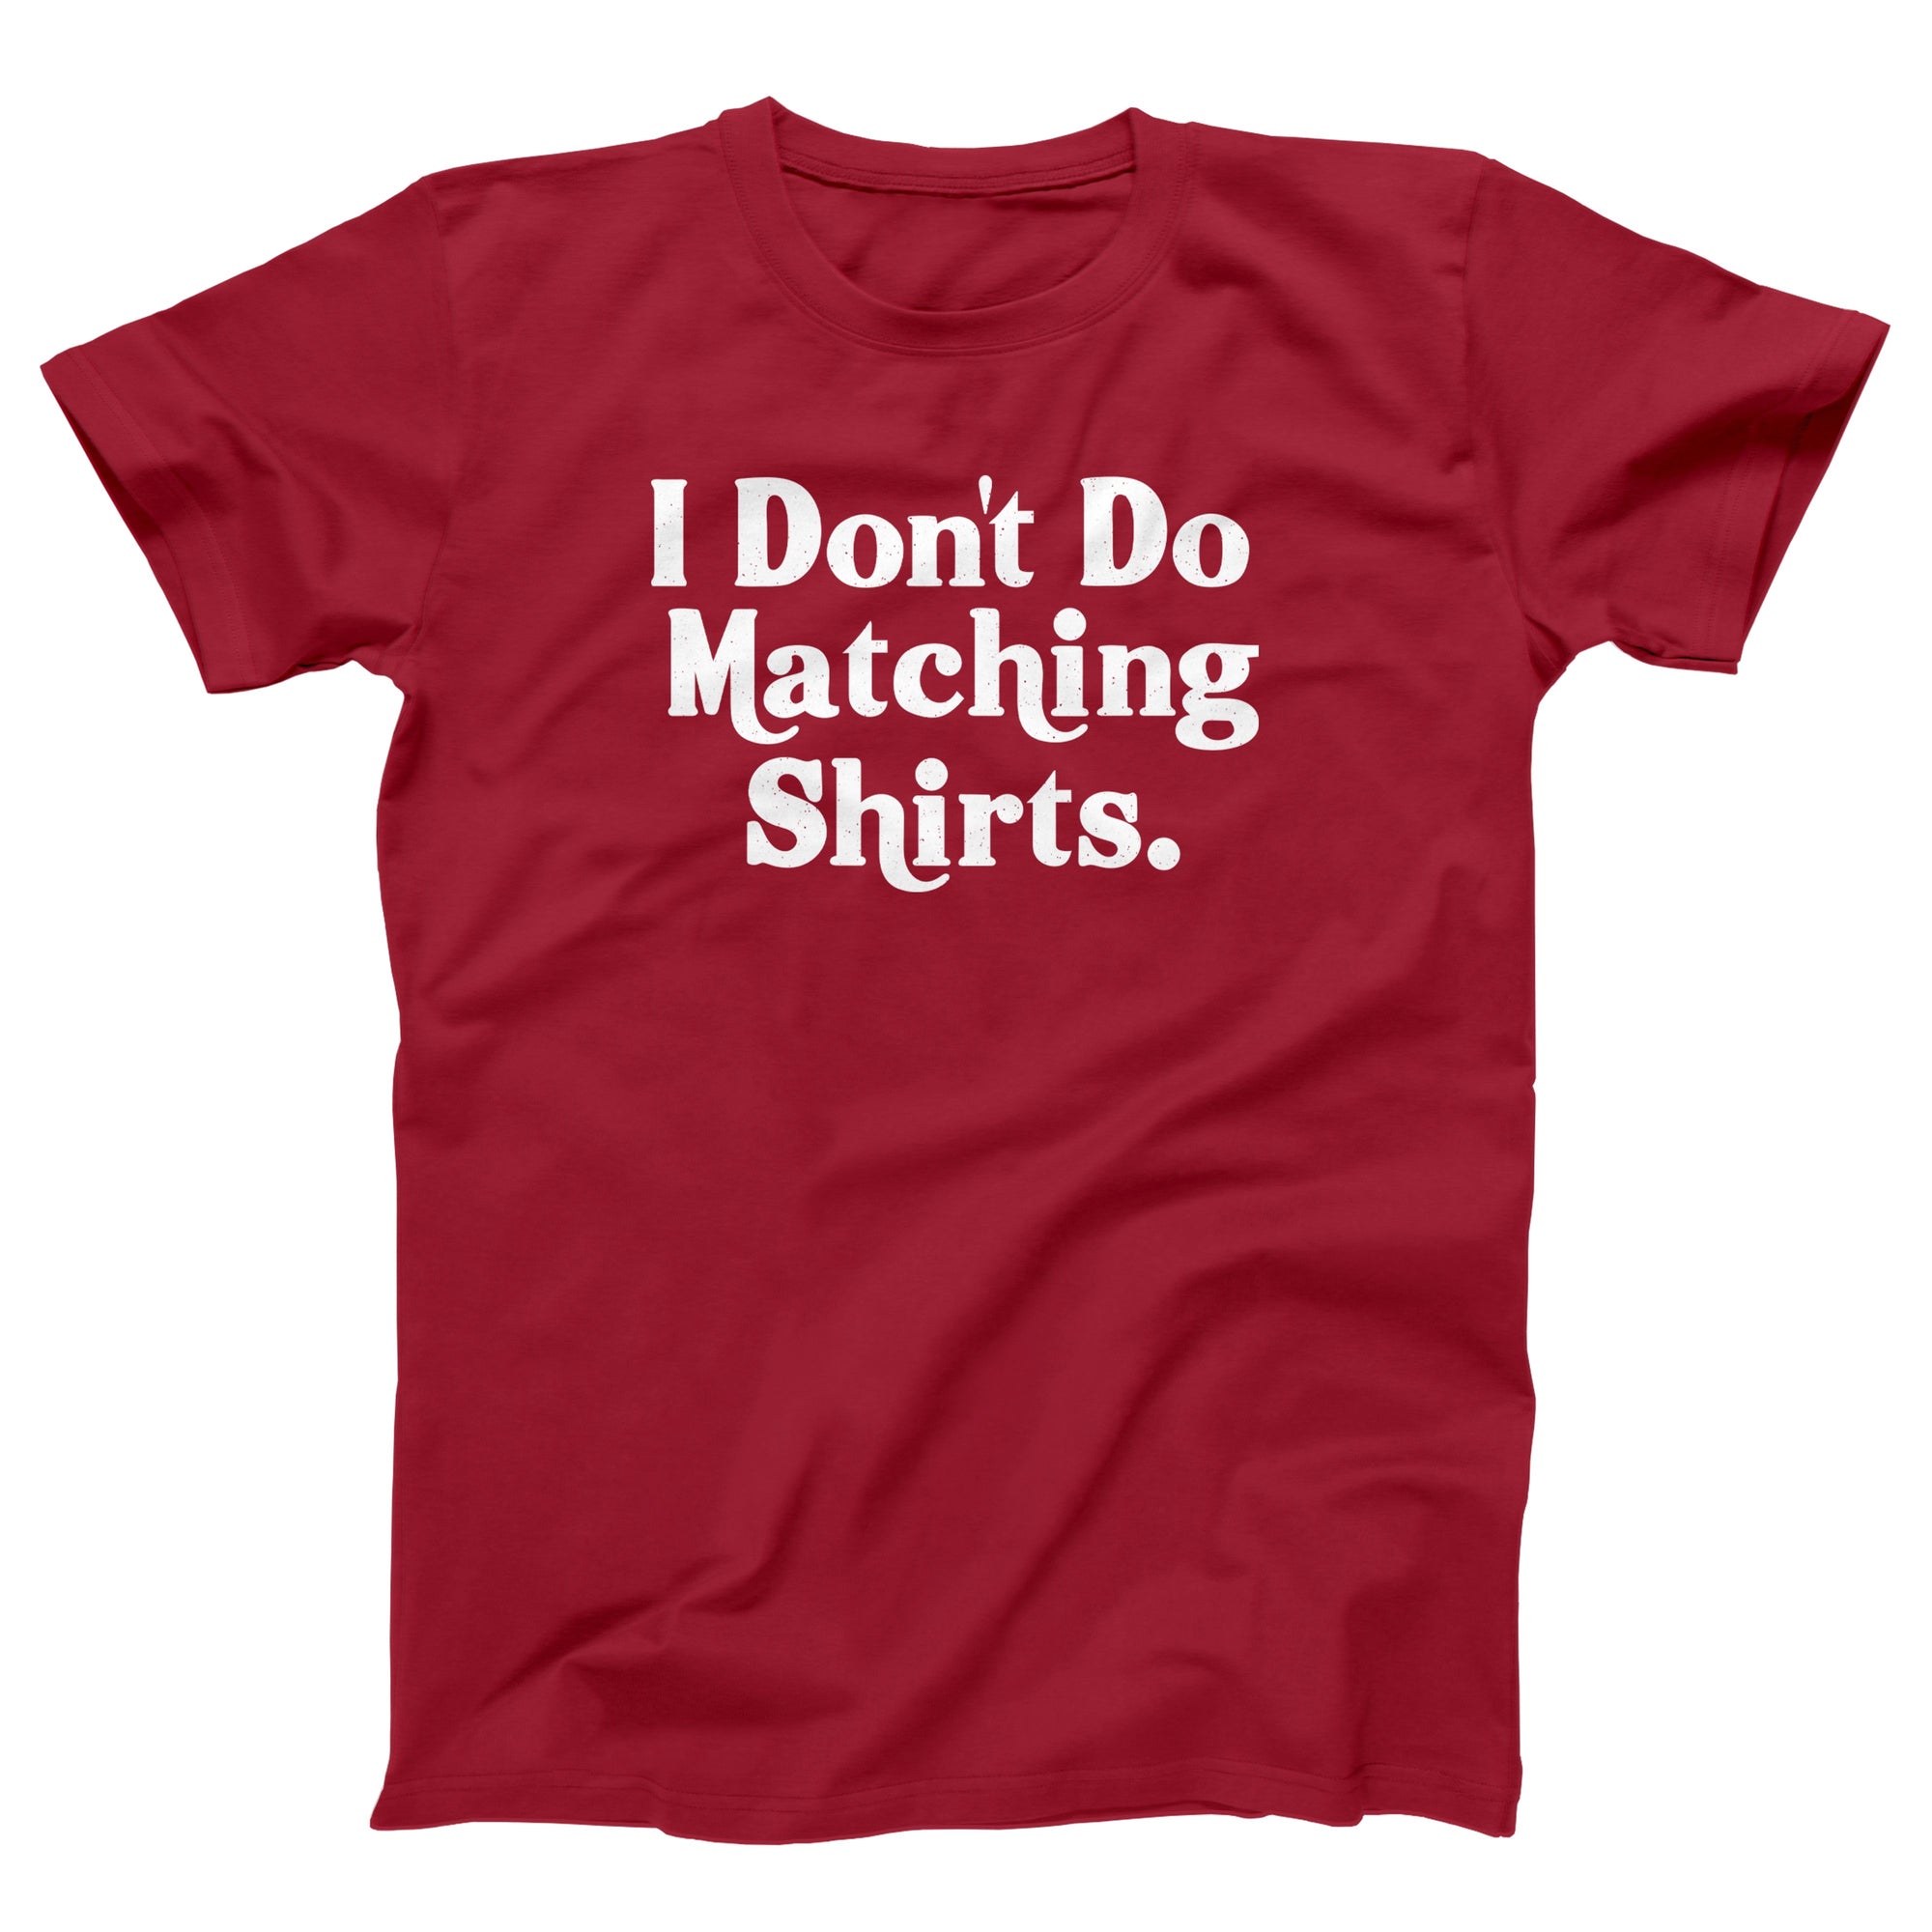 I Don't Do Matching Shirts Adult Unisex T-Shirt - anishphilip